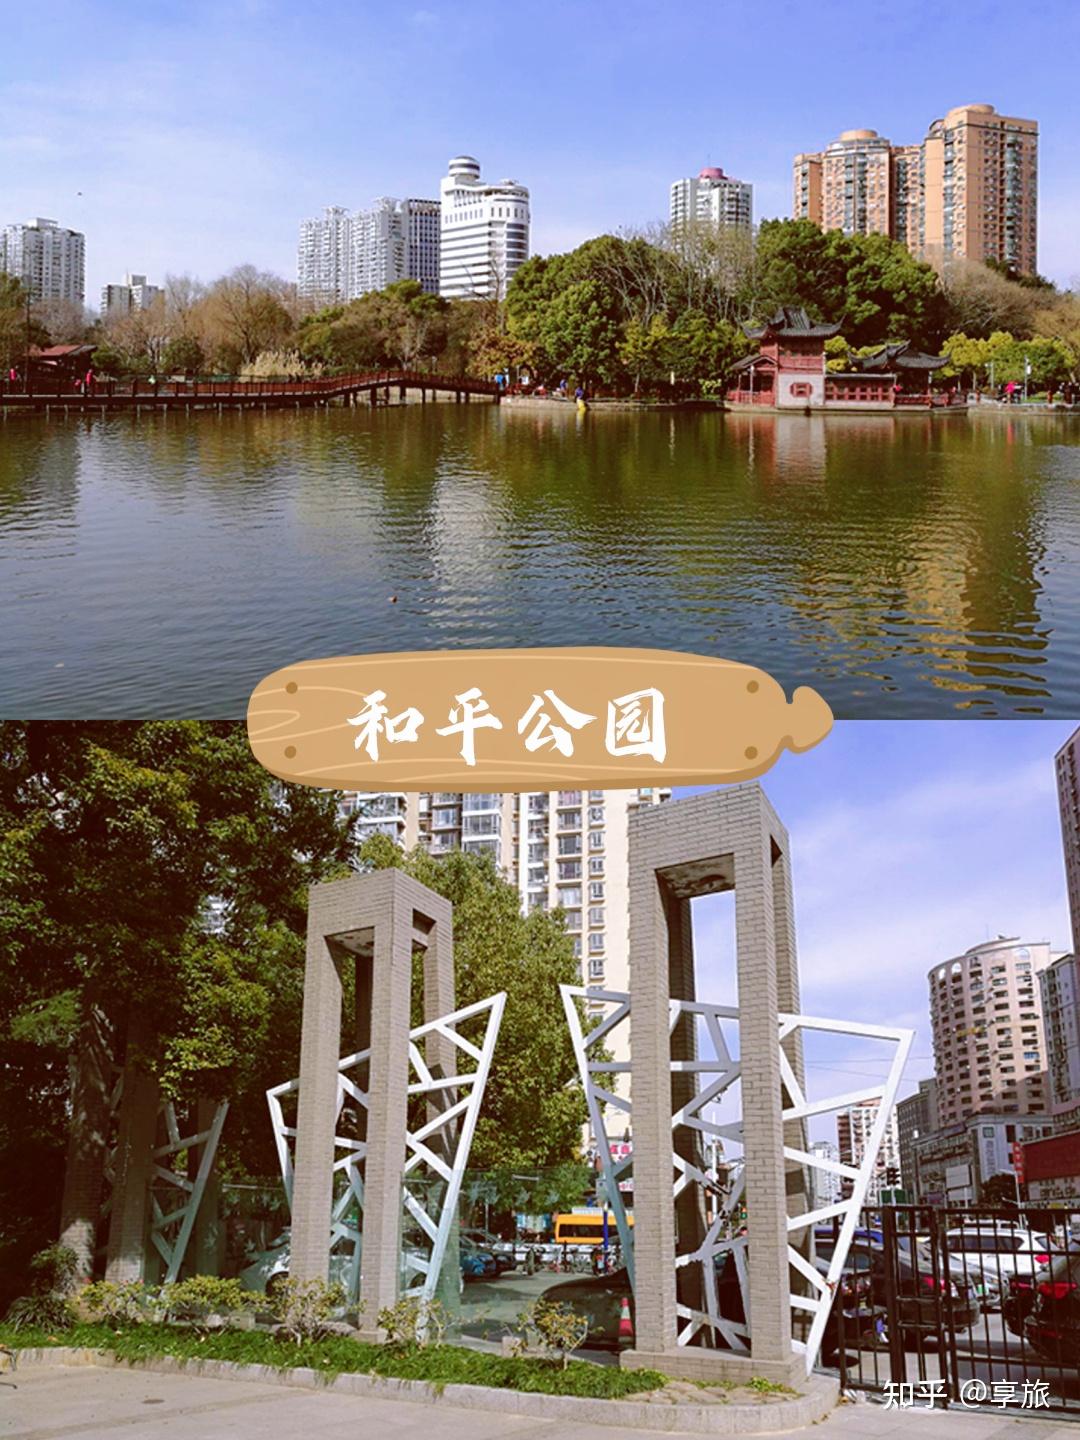 遇见美好目的地,上海虹口区的和平公园